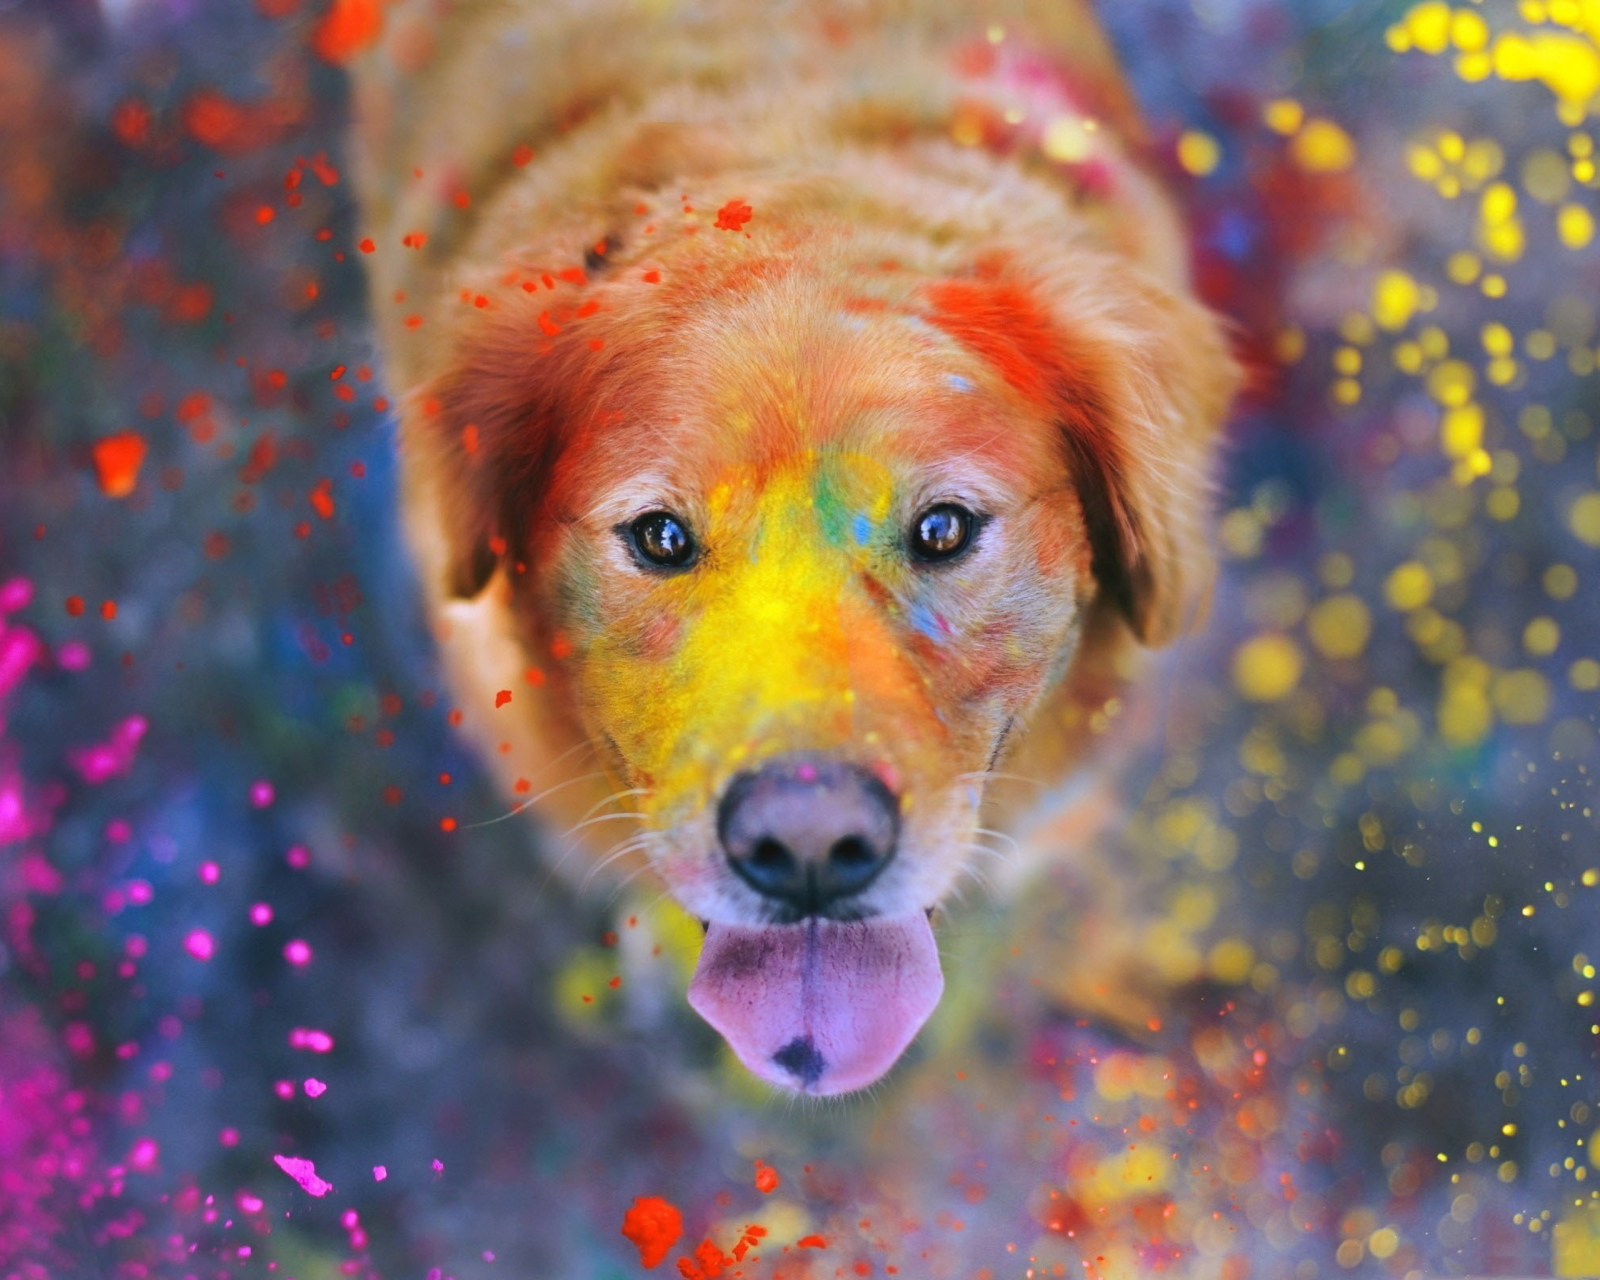 Обои Dog Under Colorful Rain 1600x1280